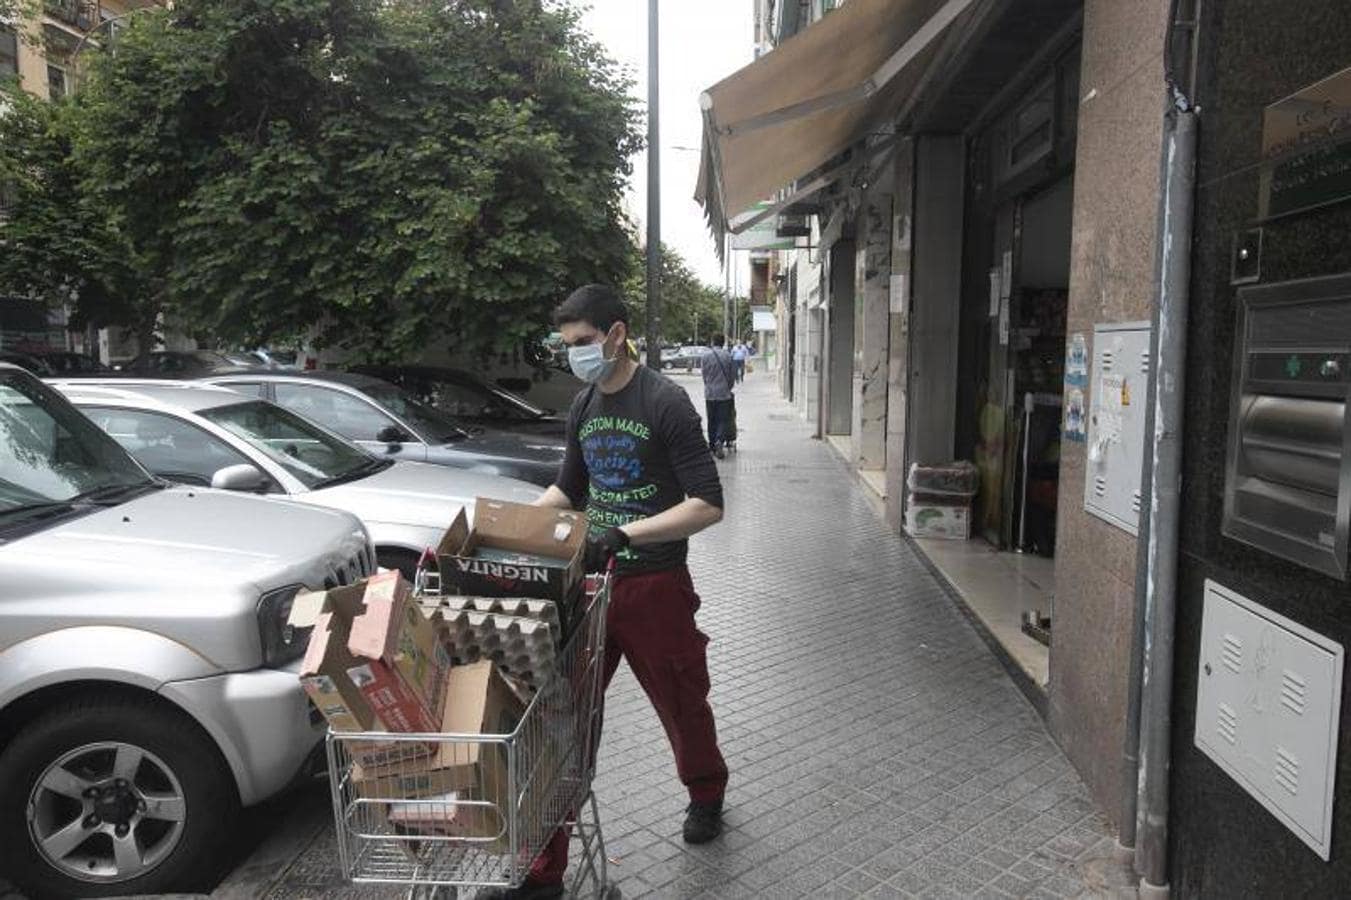 El día a día de Ciudad Jardín de Córdoba durante el coronavirus, en imágenes